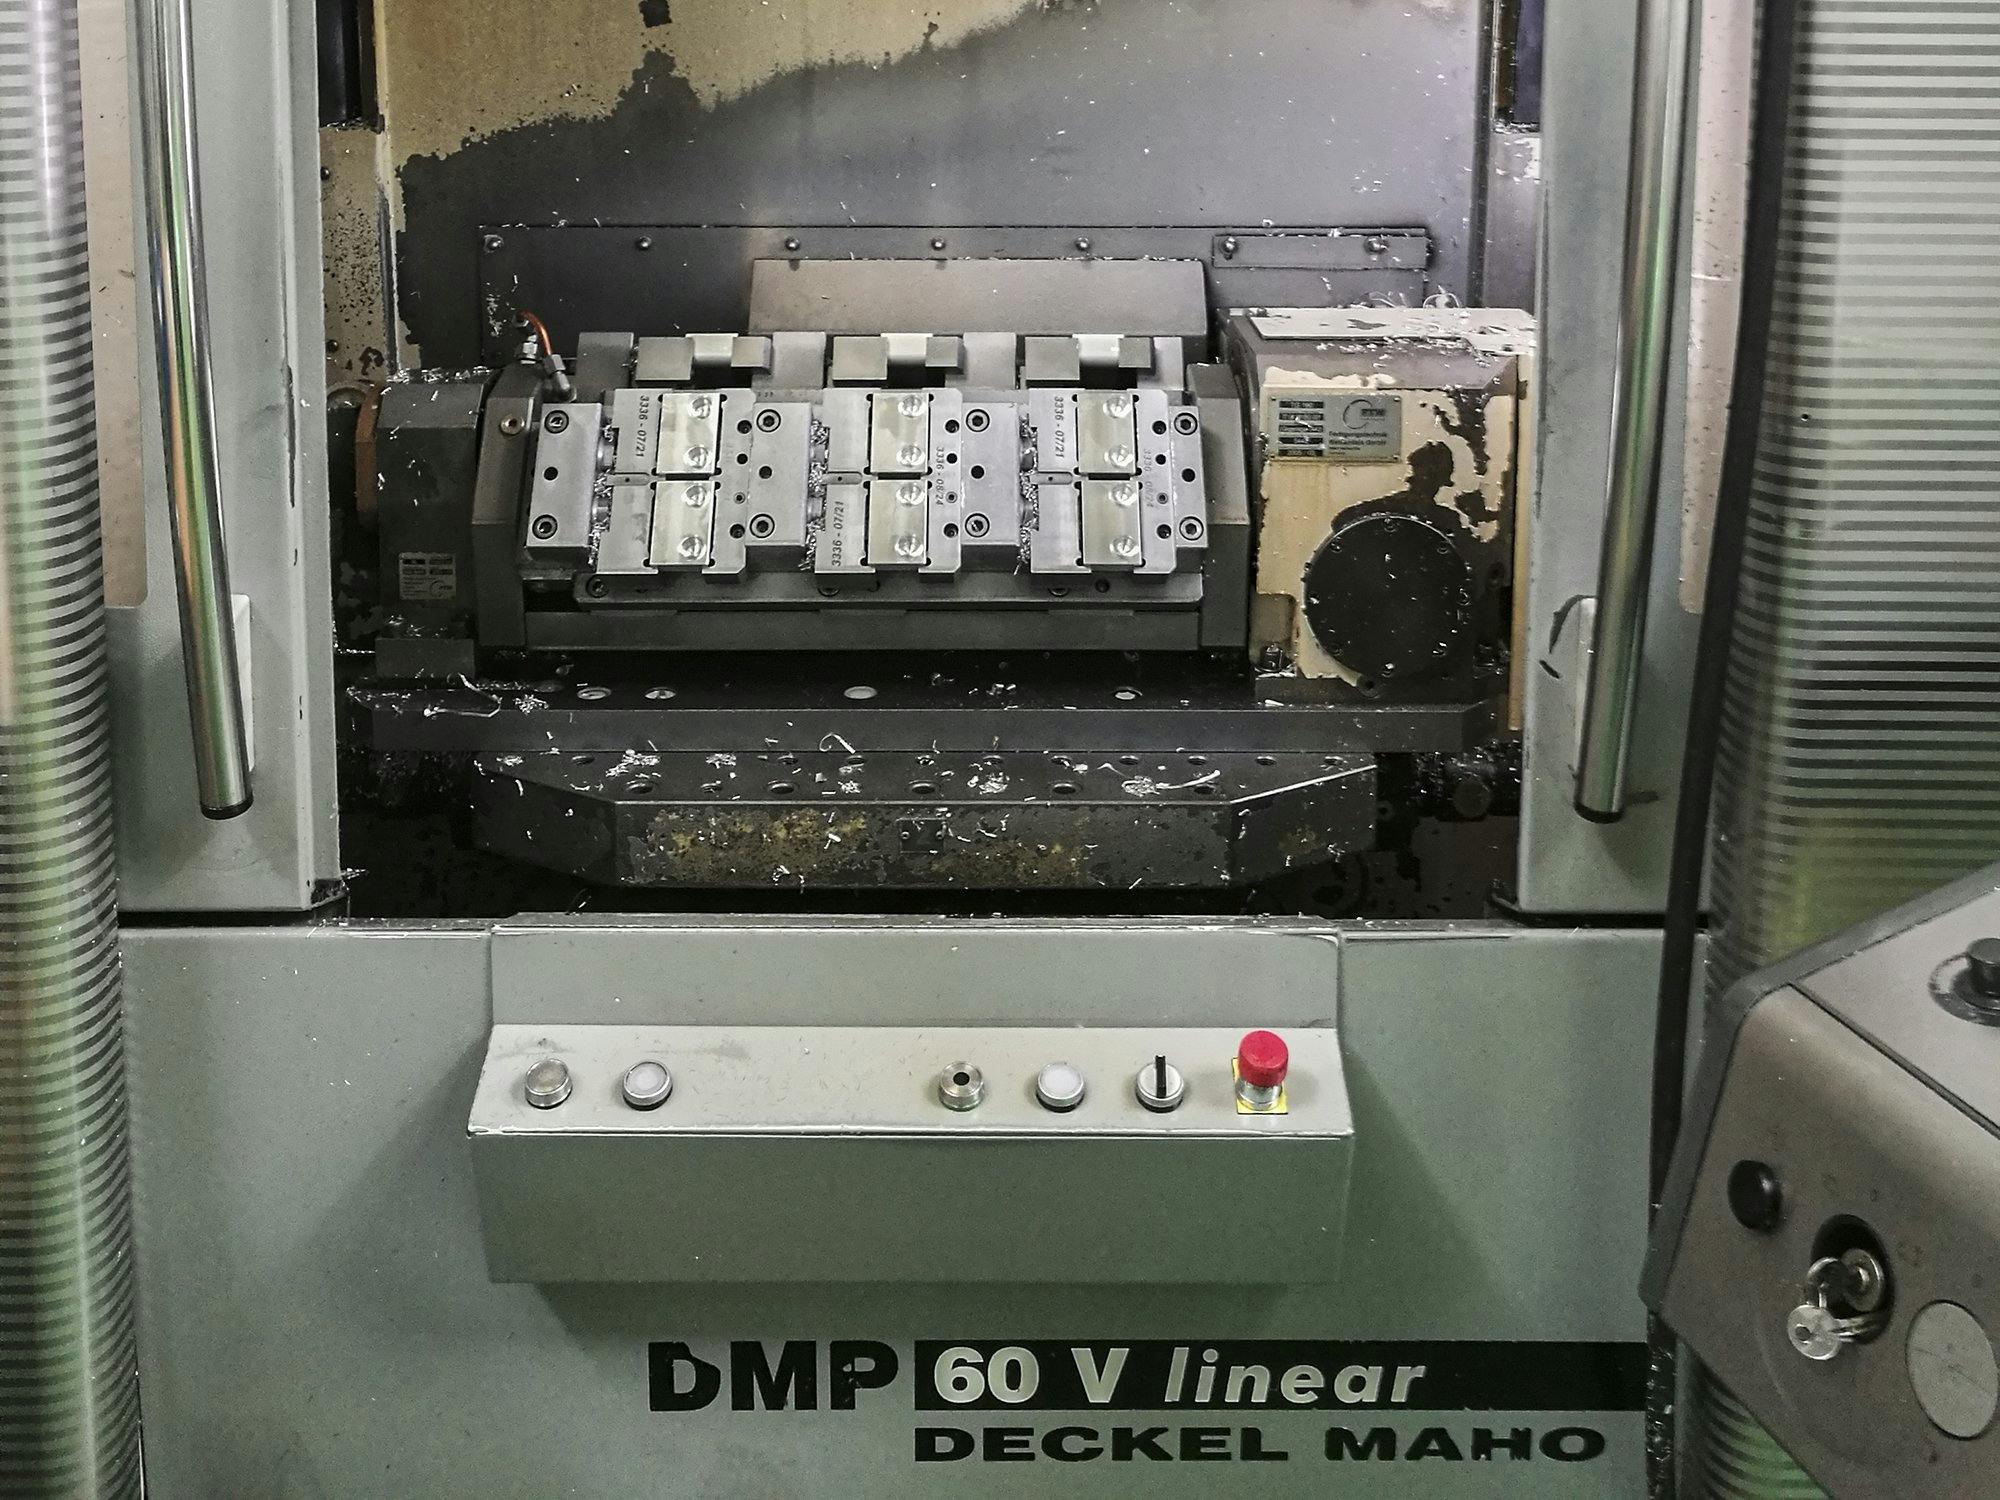 Vista frontal de la máquina DECKEL MAHO DMP 60 V linear